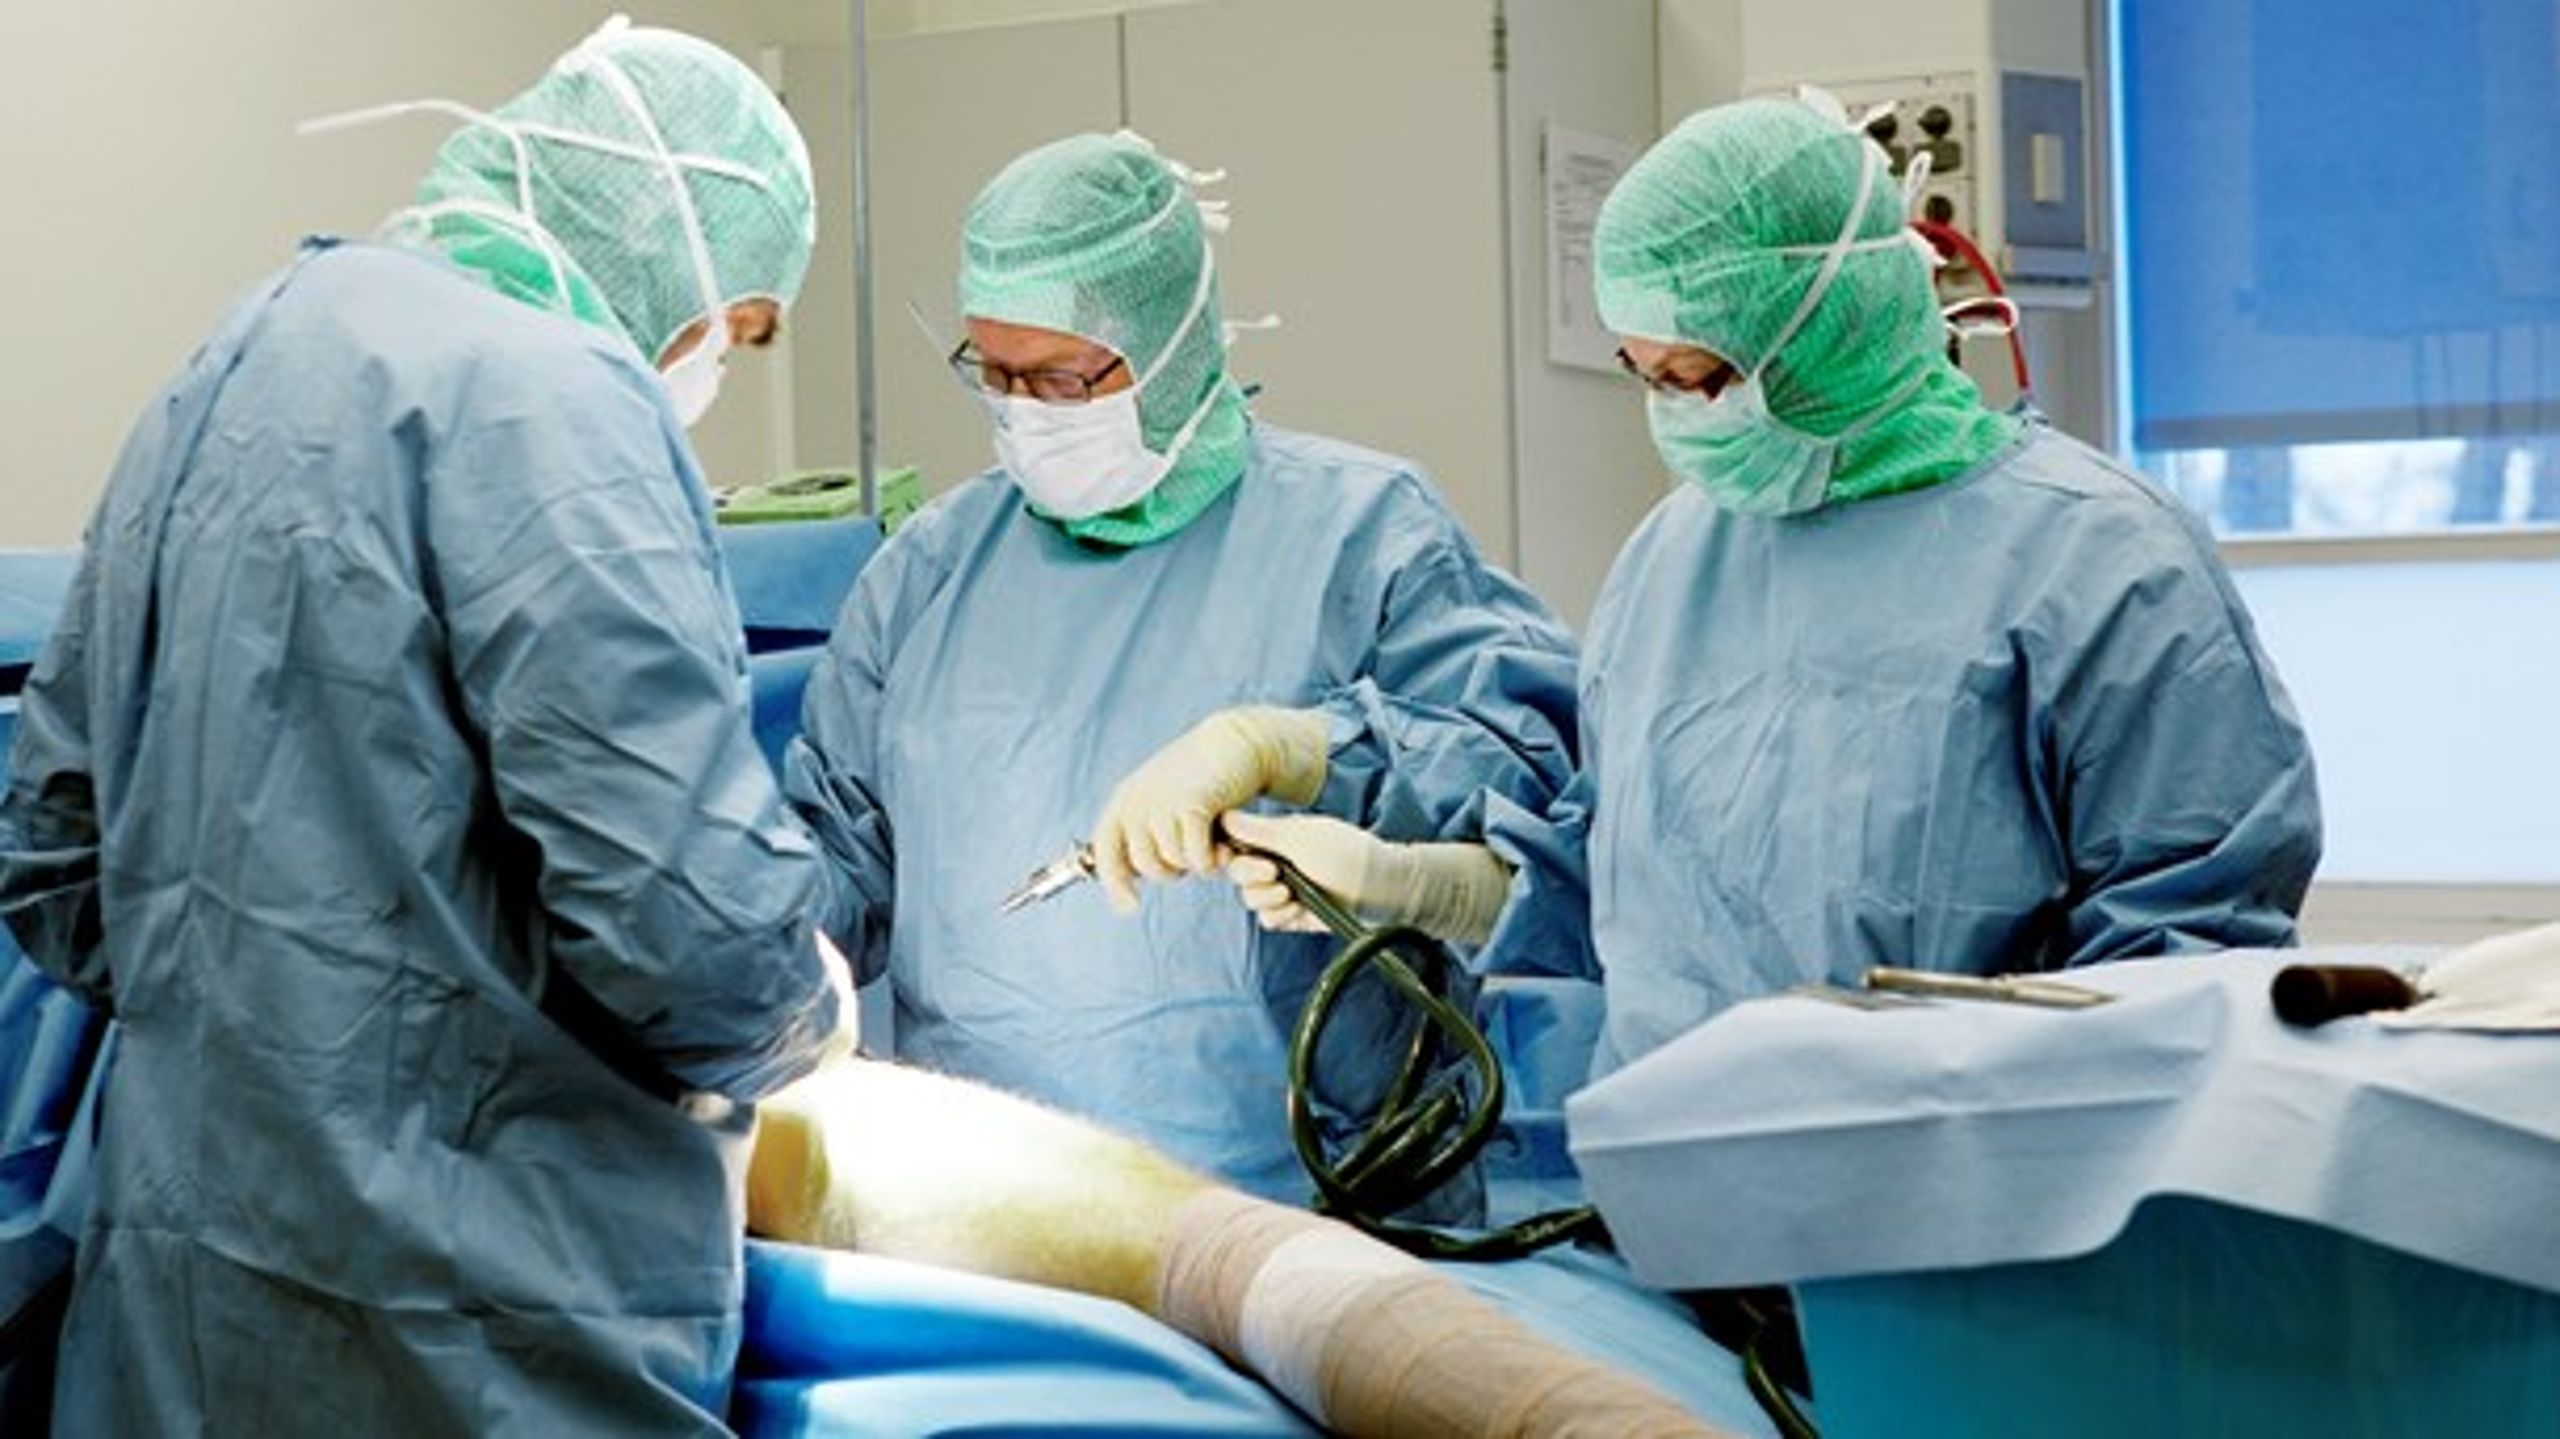 Ortopædkirurgi er et af de specialer, hvor ventelisterne er eksploderet under coronakrisen.&nbsp;